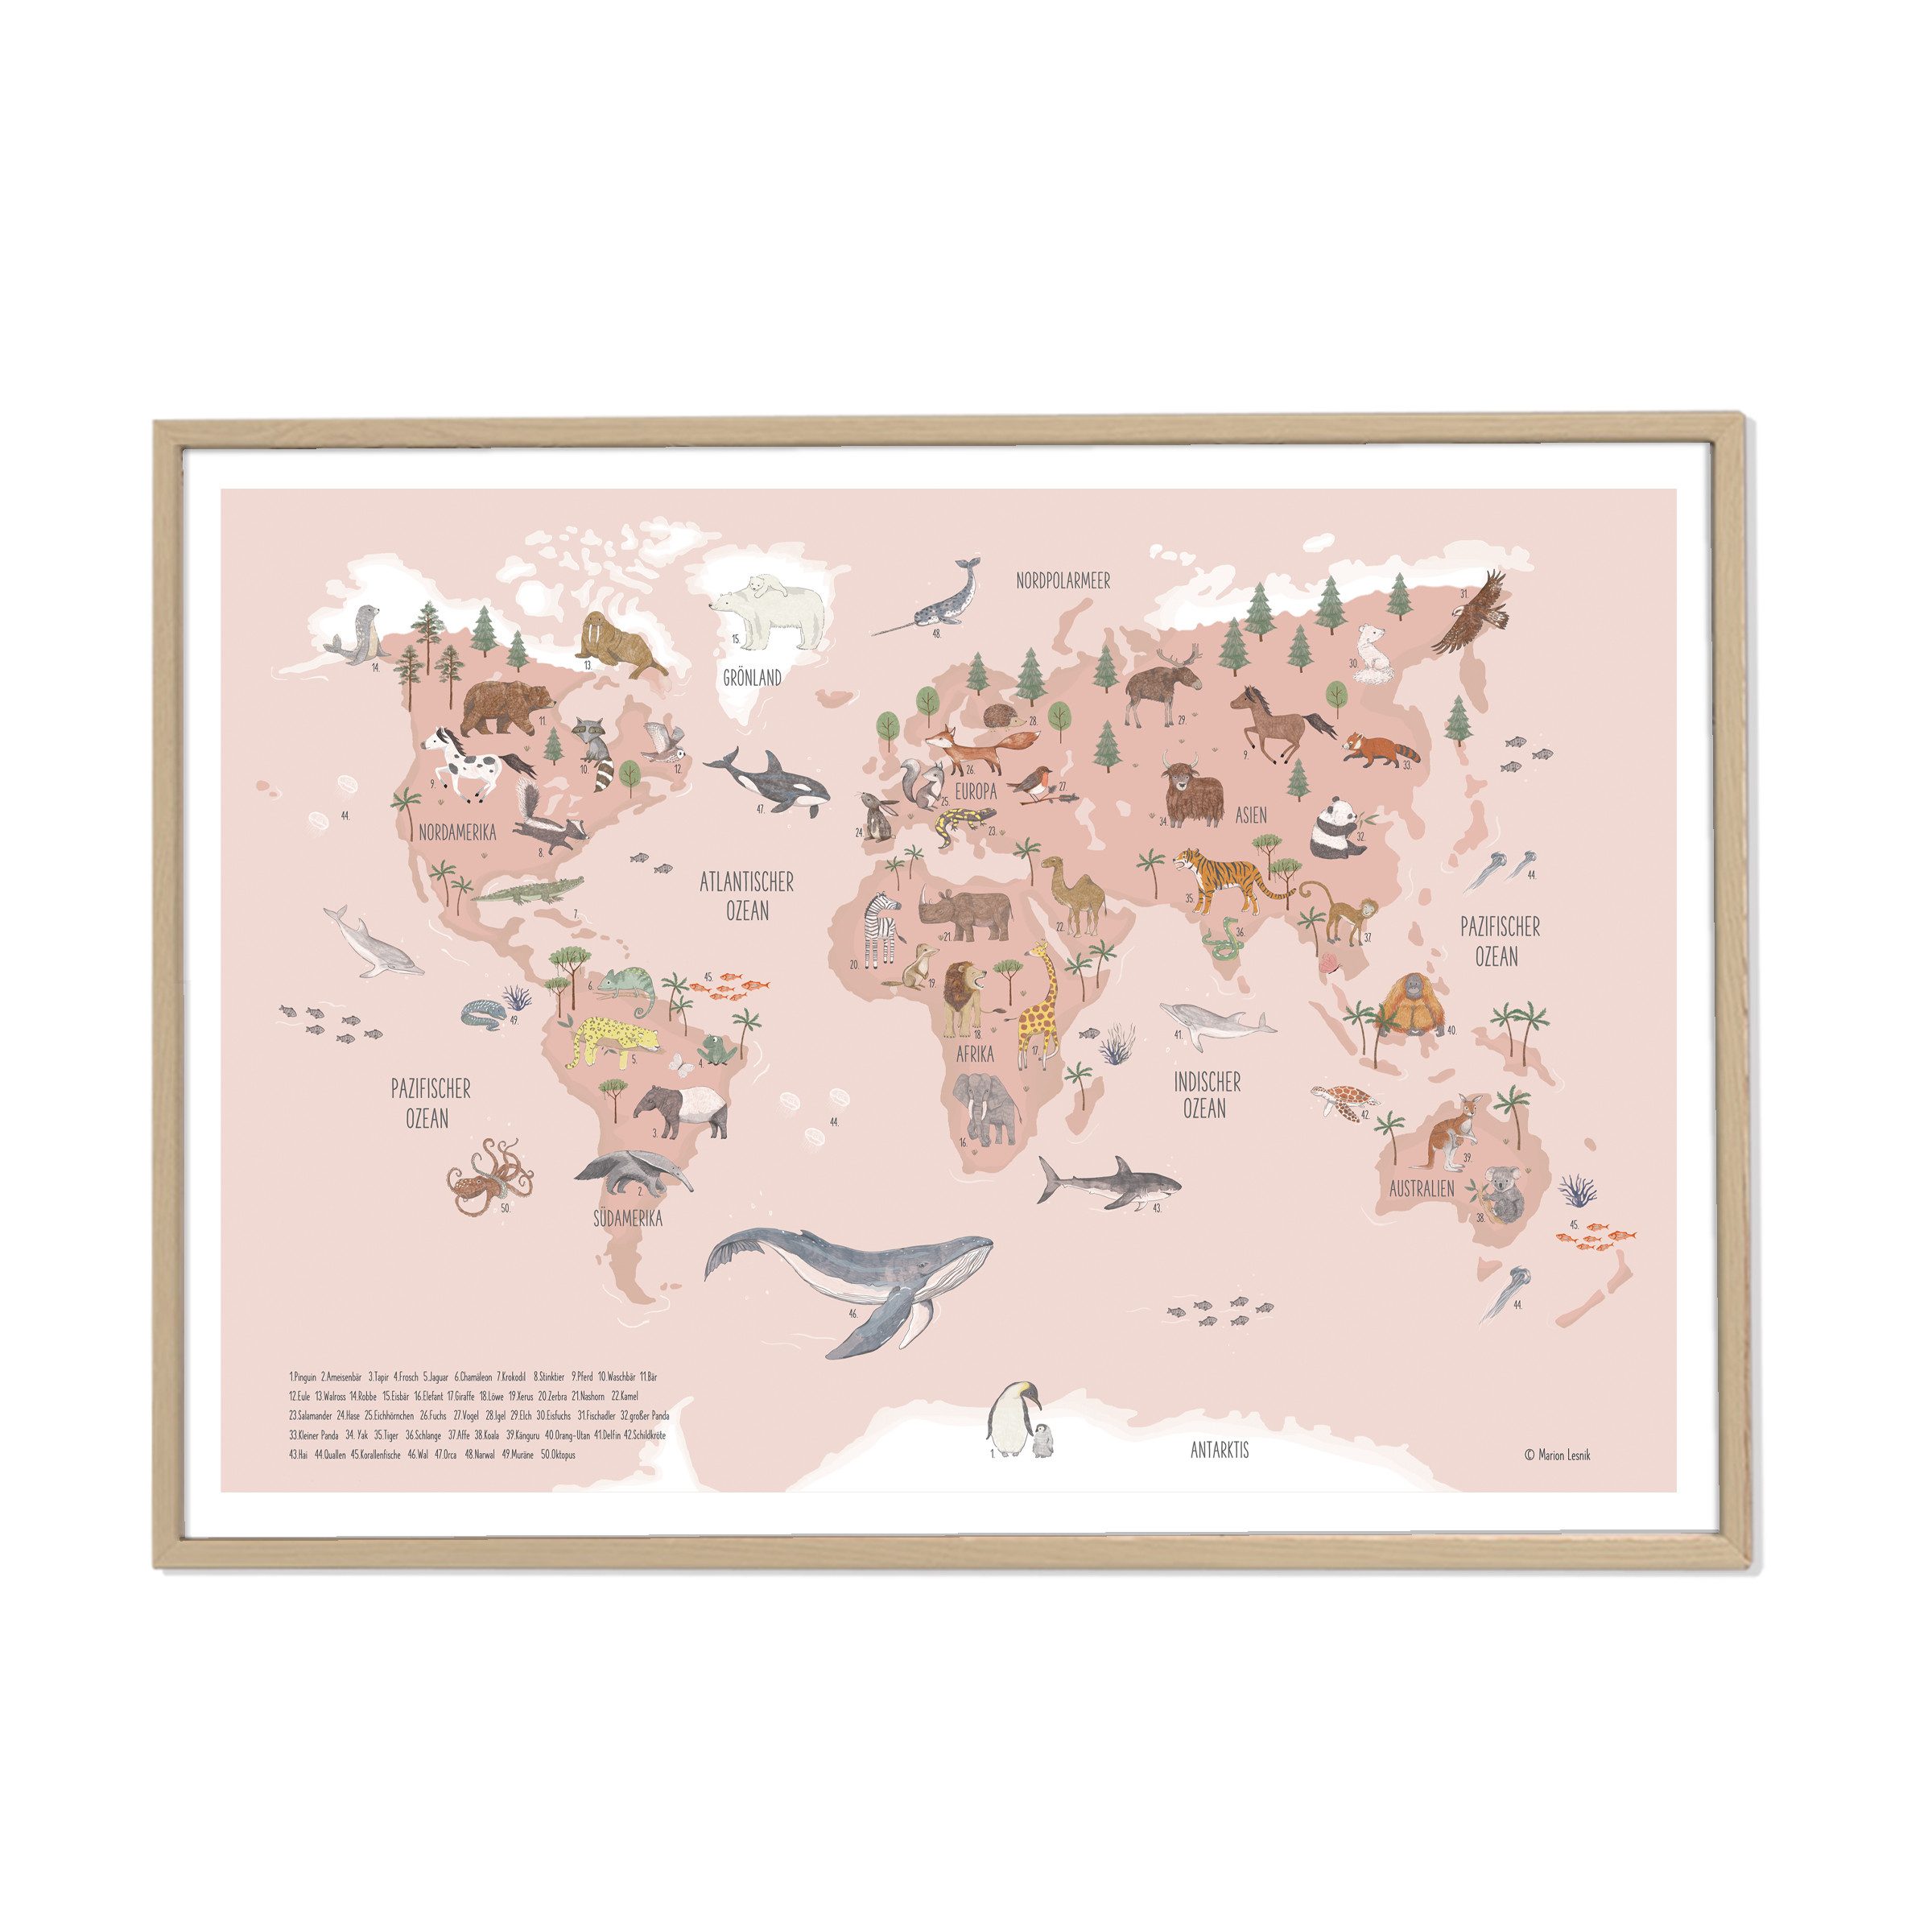 Designforlittleones Poster Weltkarte der Tiere rosa, original von Marion Lesnik